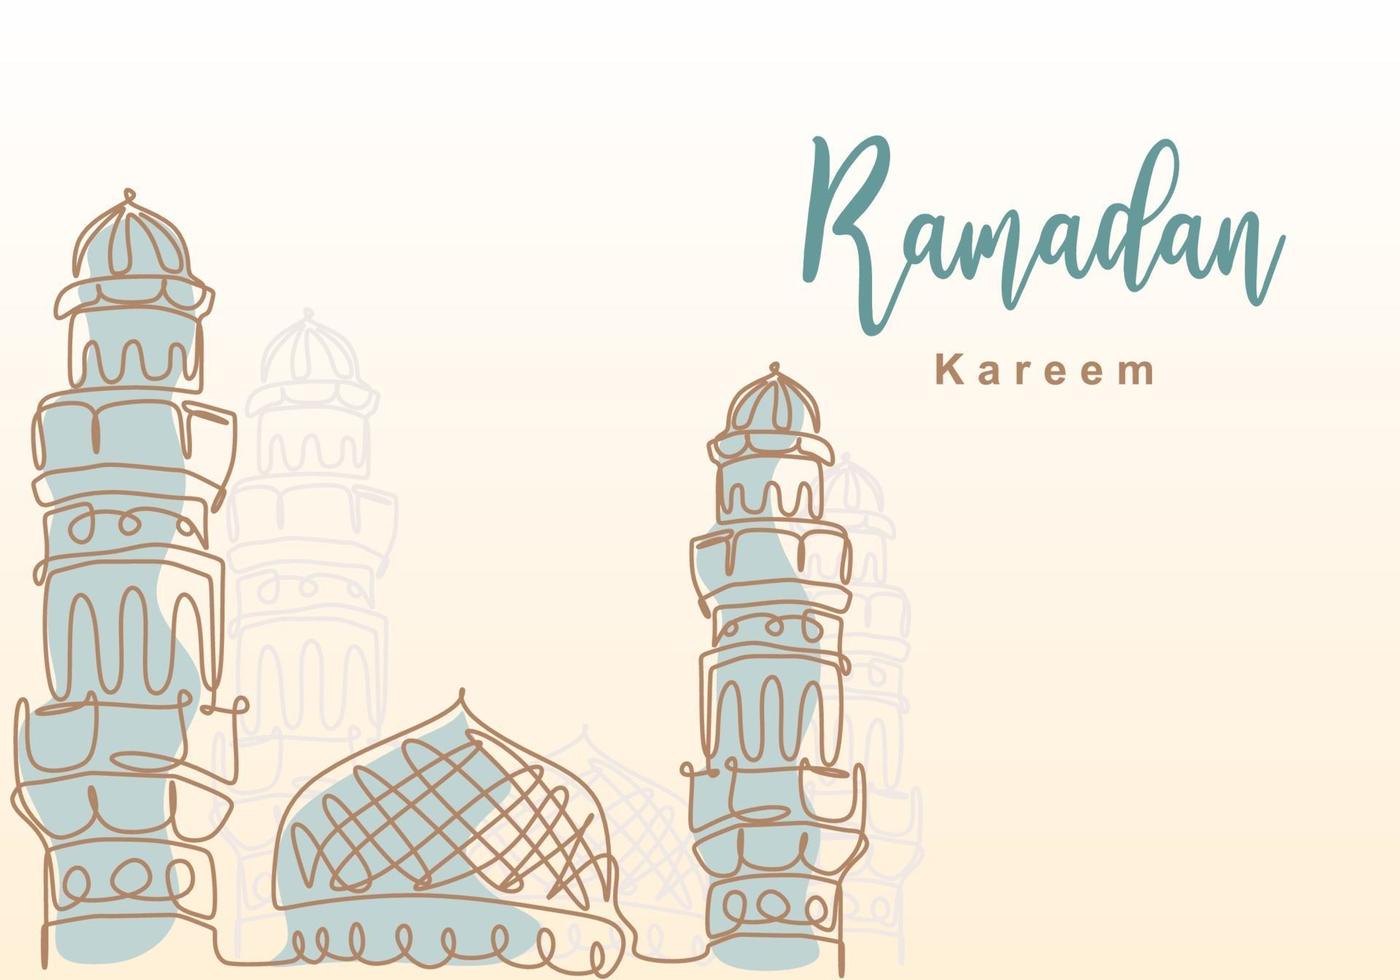 Ramadan Kareem eine durchgehende Linie mit islamischer Moschee, Moscheekuppel und Moschee Turm Ornament. eid al fitr mubarak und ramadan kareem grußkartenkonzept handgezeichnetes design minimalistischer stil vektor